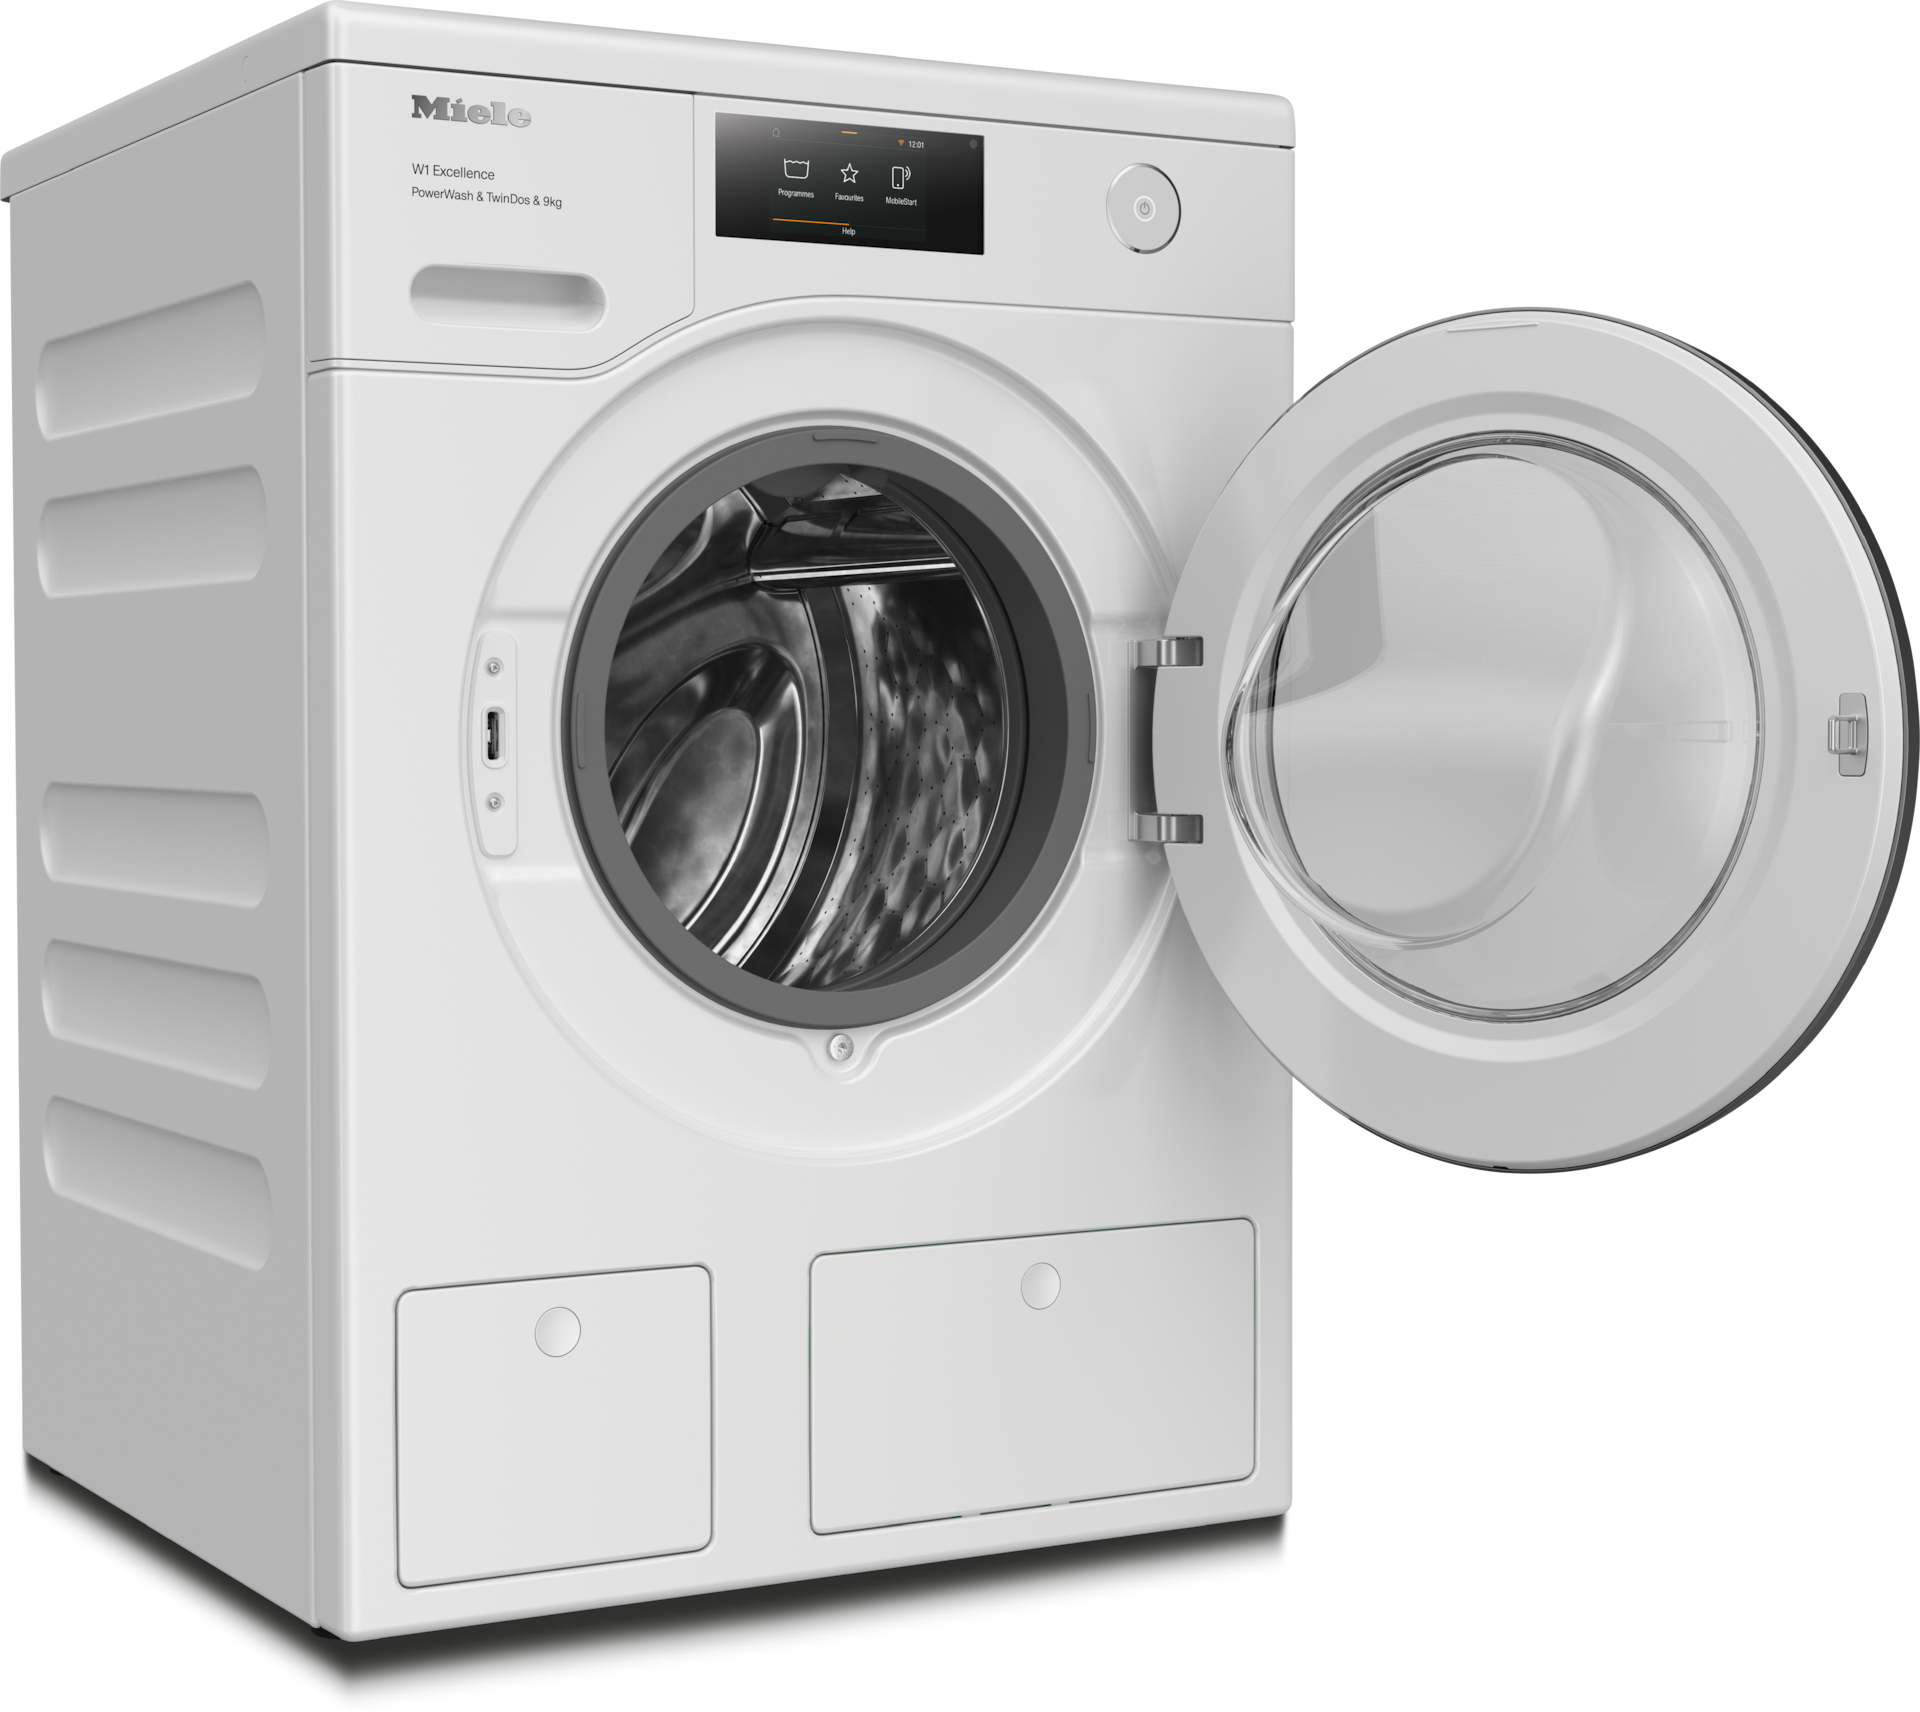 Washing machines - WER865 WPS PWash&TDos&9kg Lotus white - 2